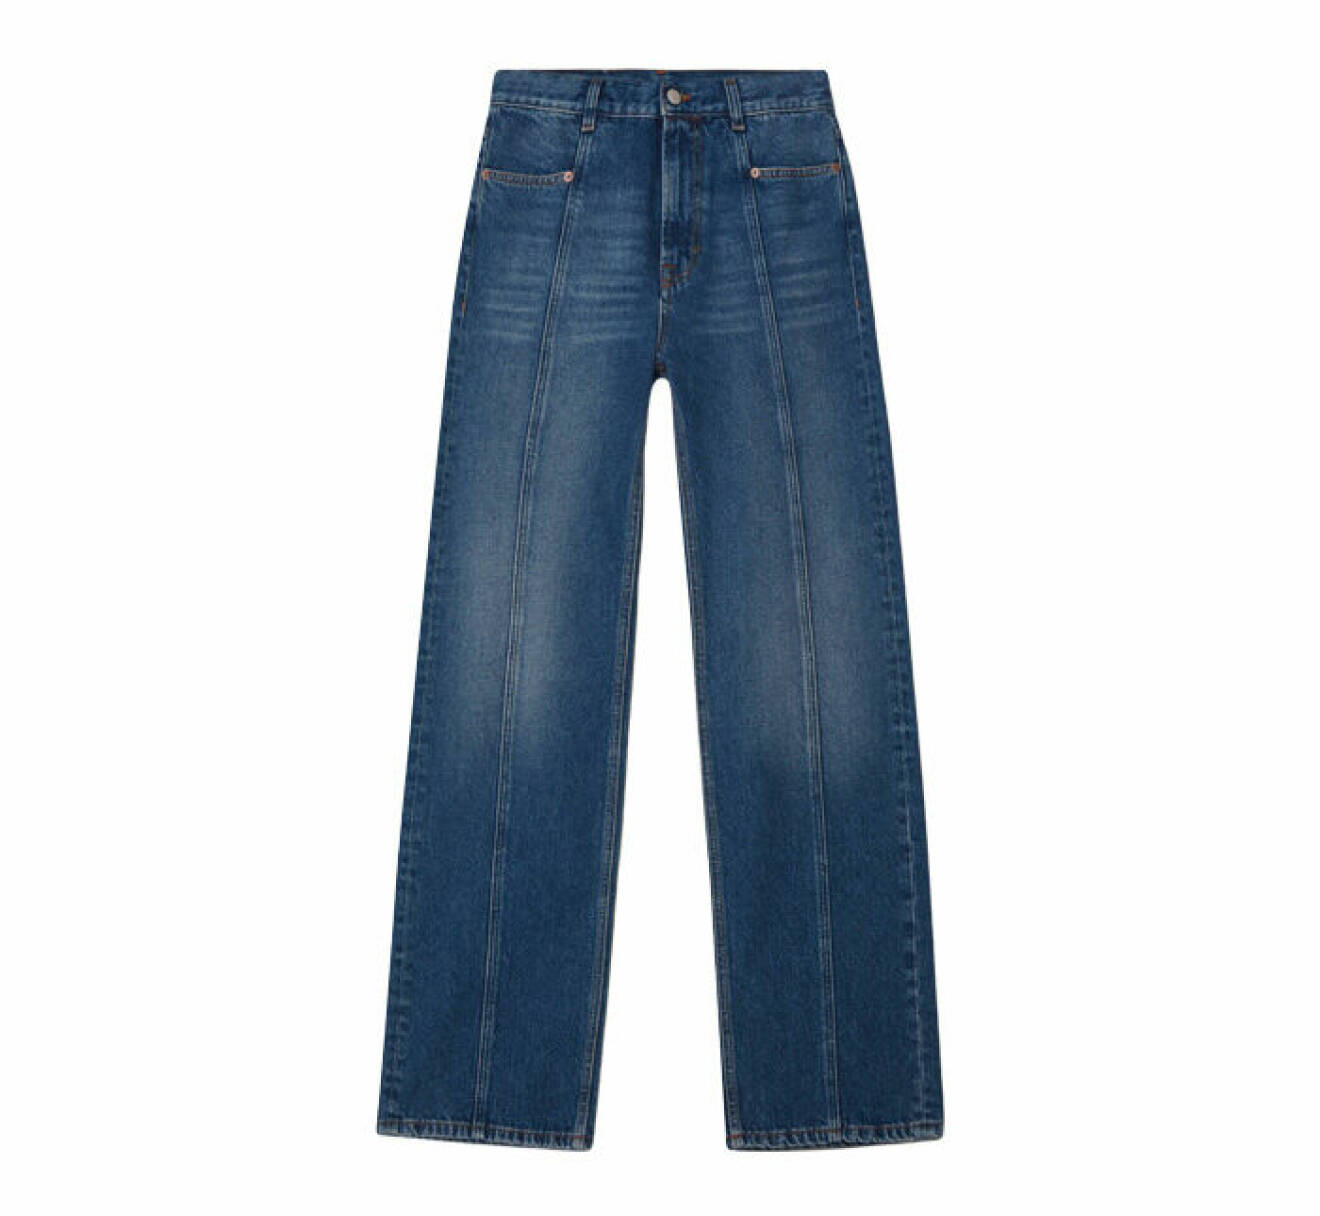 jeans med långa ben med lös passform och sömmar framtill från Dagmar